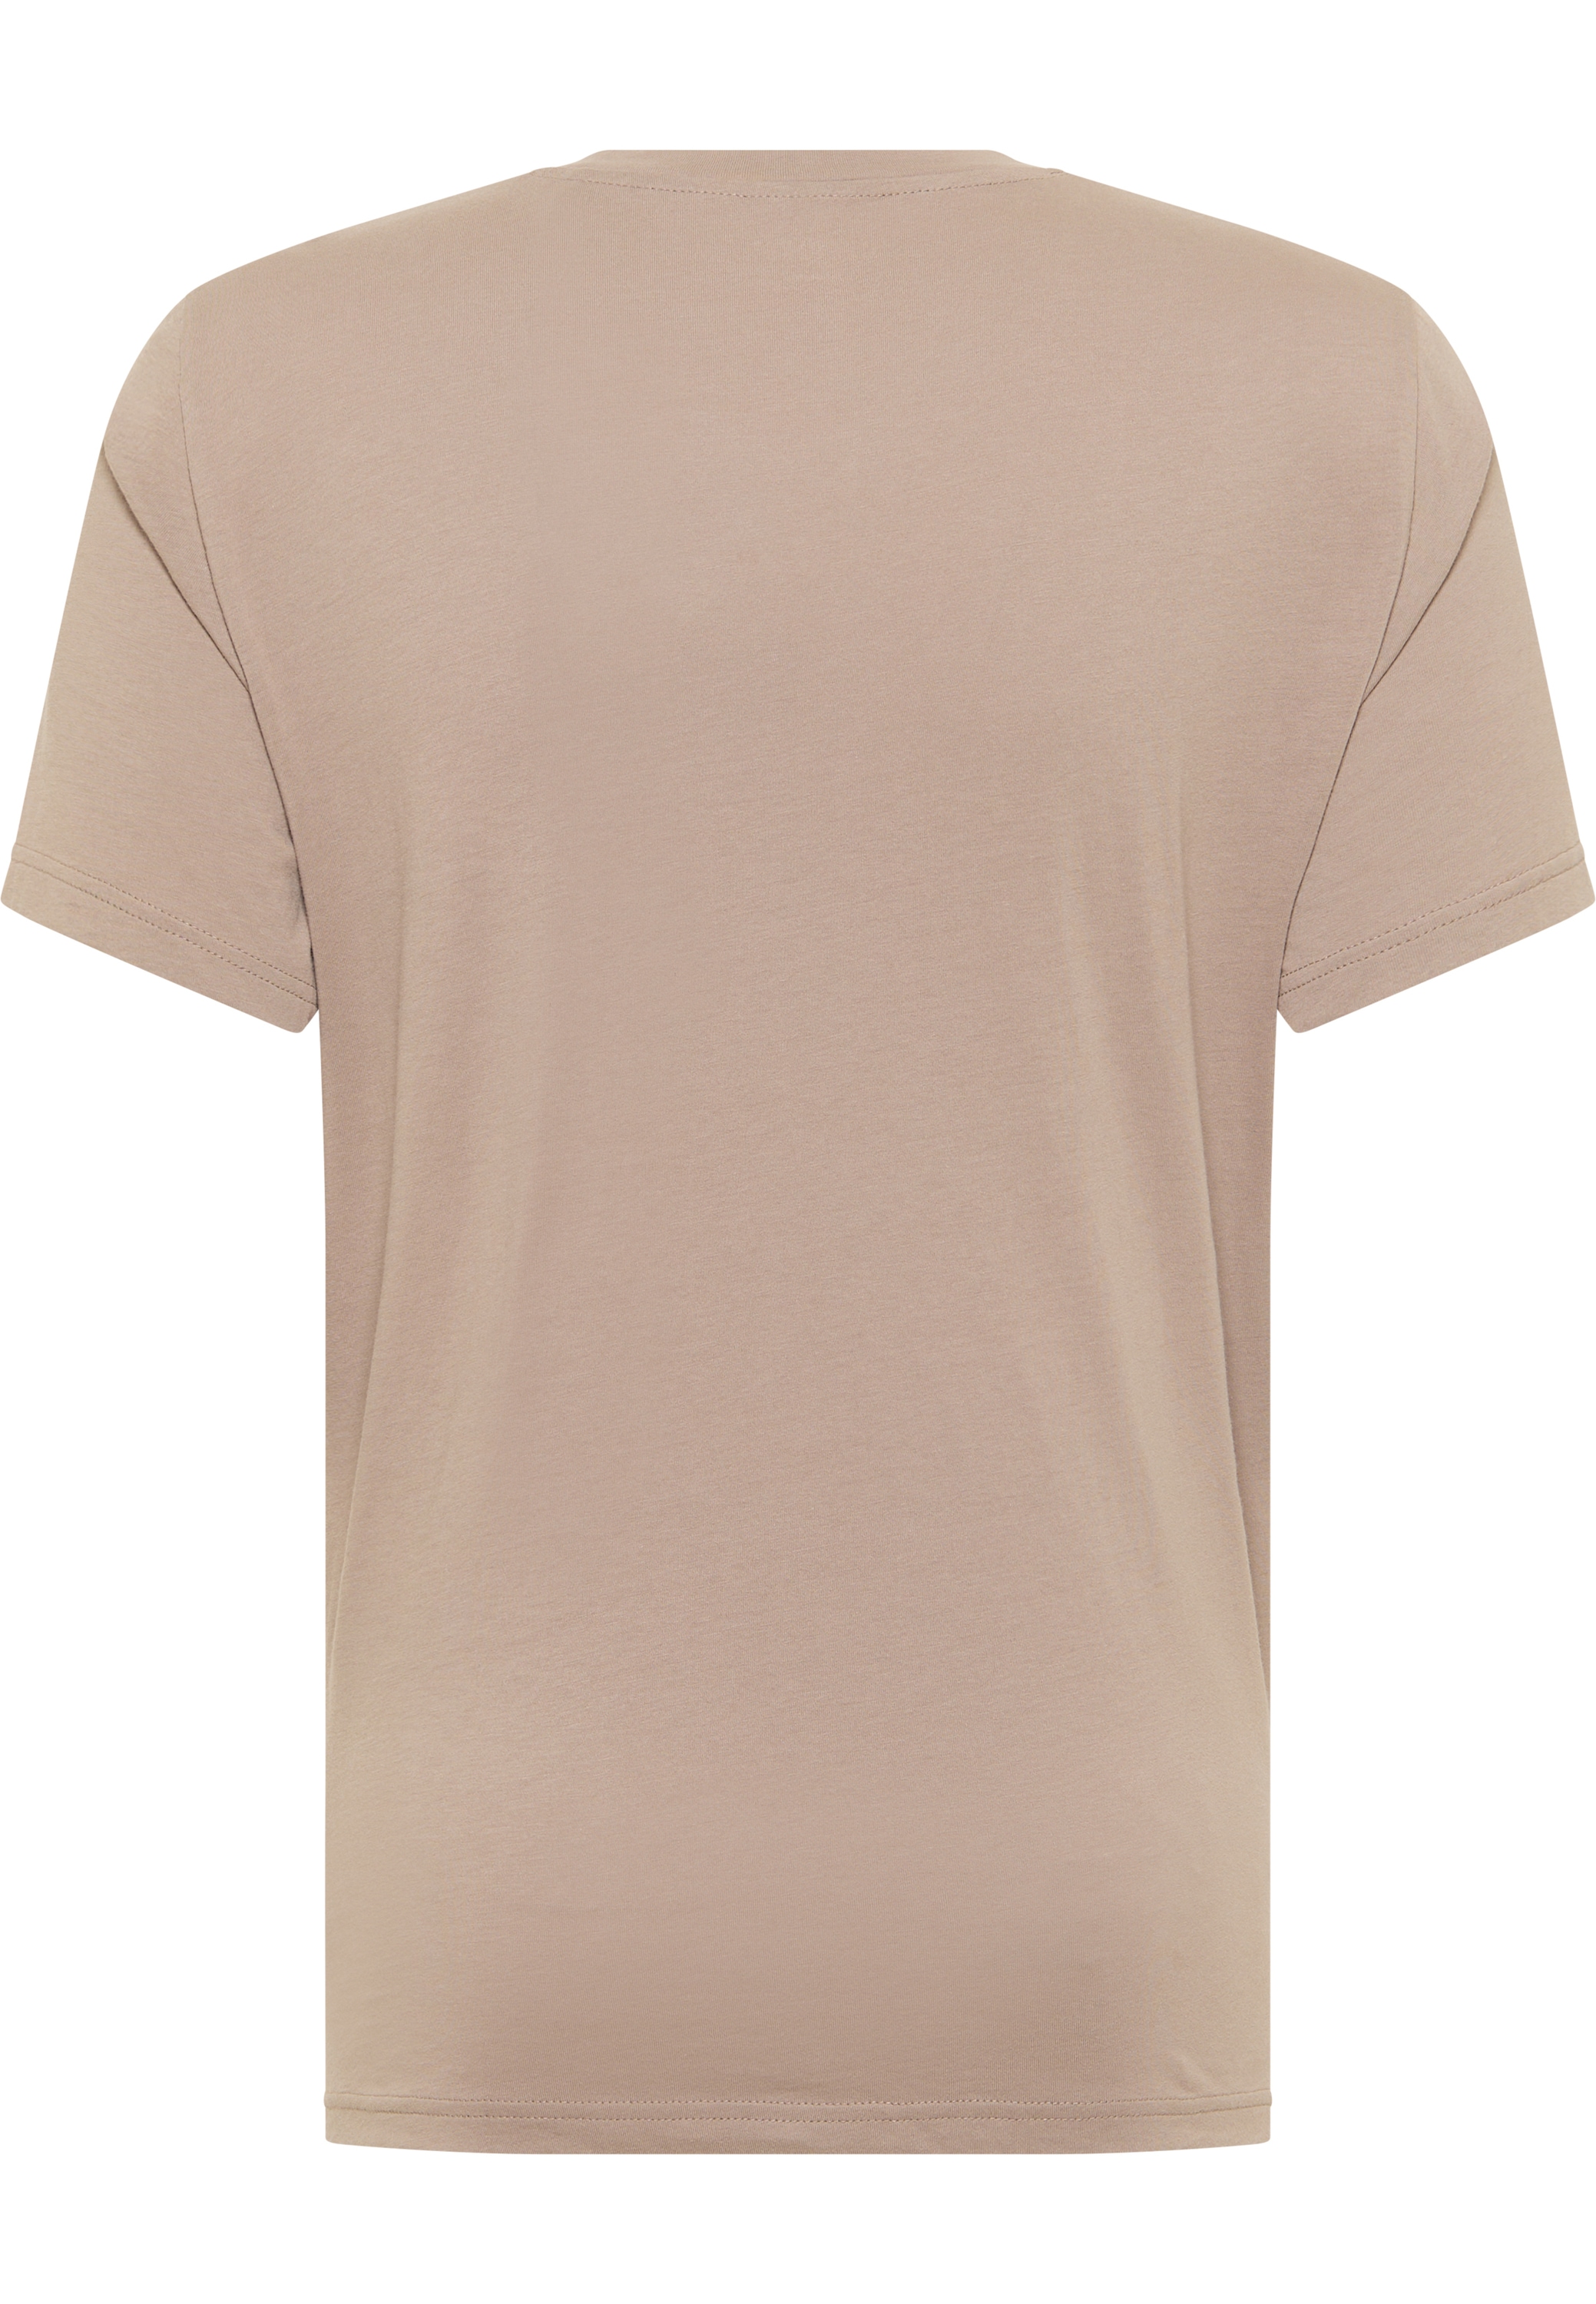 MUSTANG Kurzarmshirt bei »T-Shirt« OTTO online bestellen